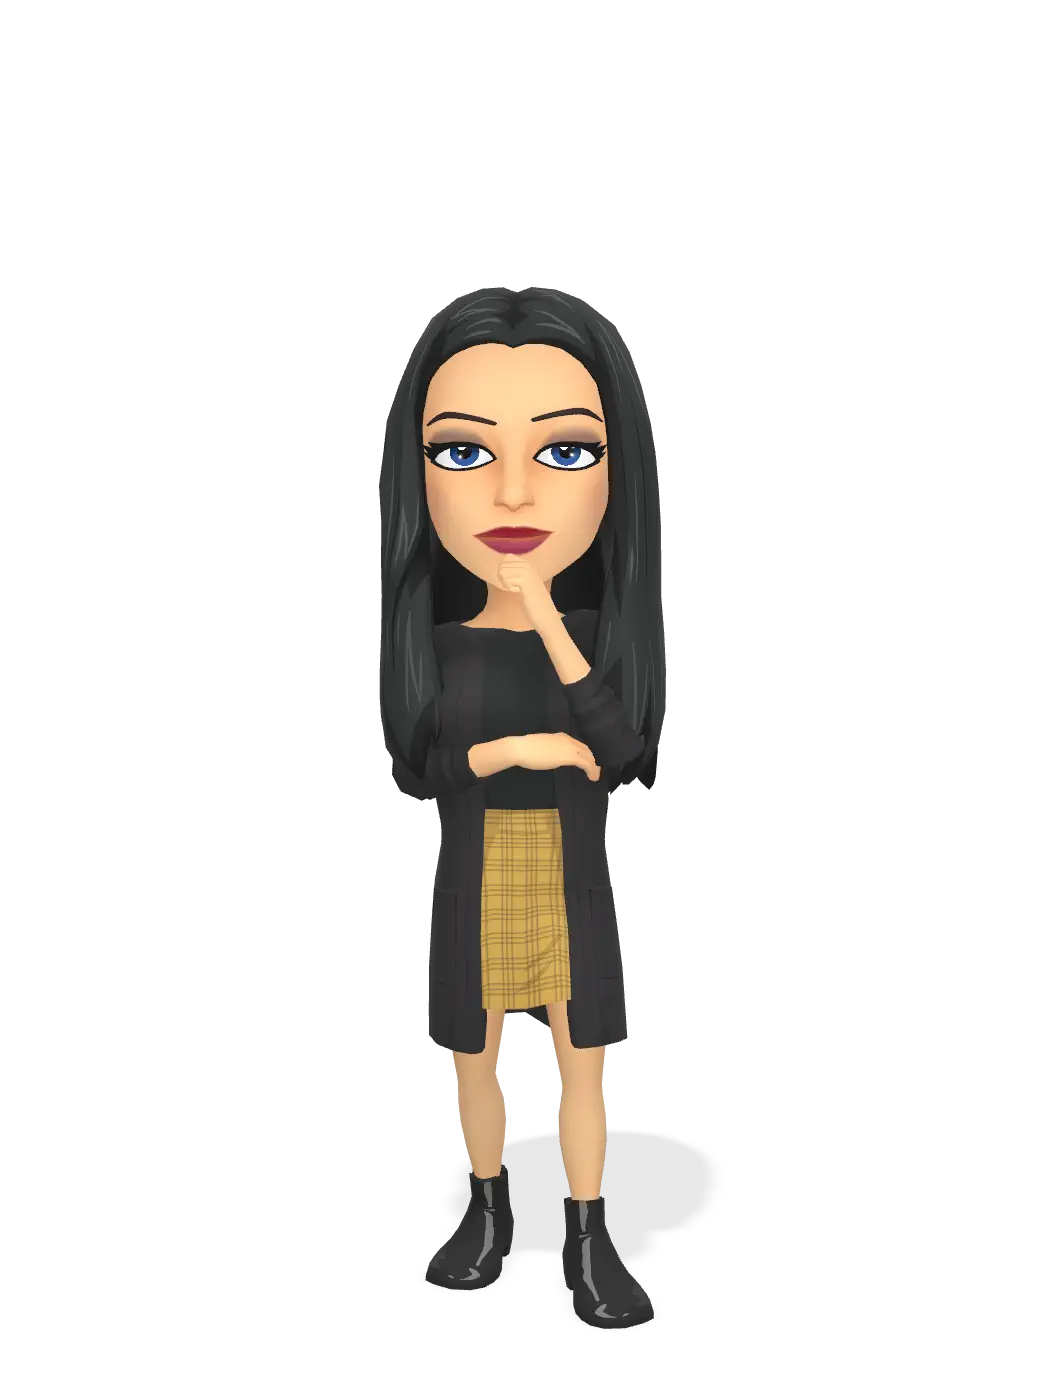 3D Bitmoji for shshhha avatar